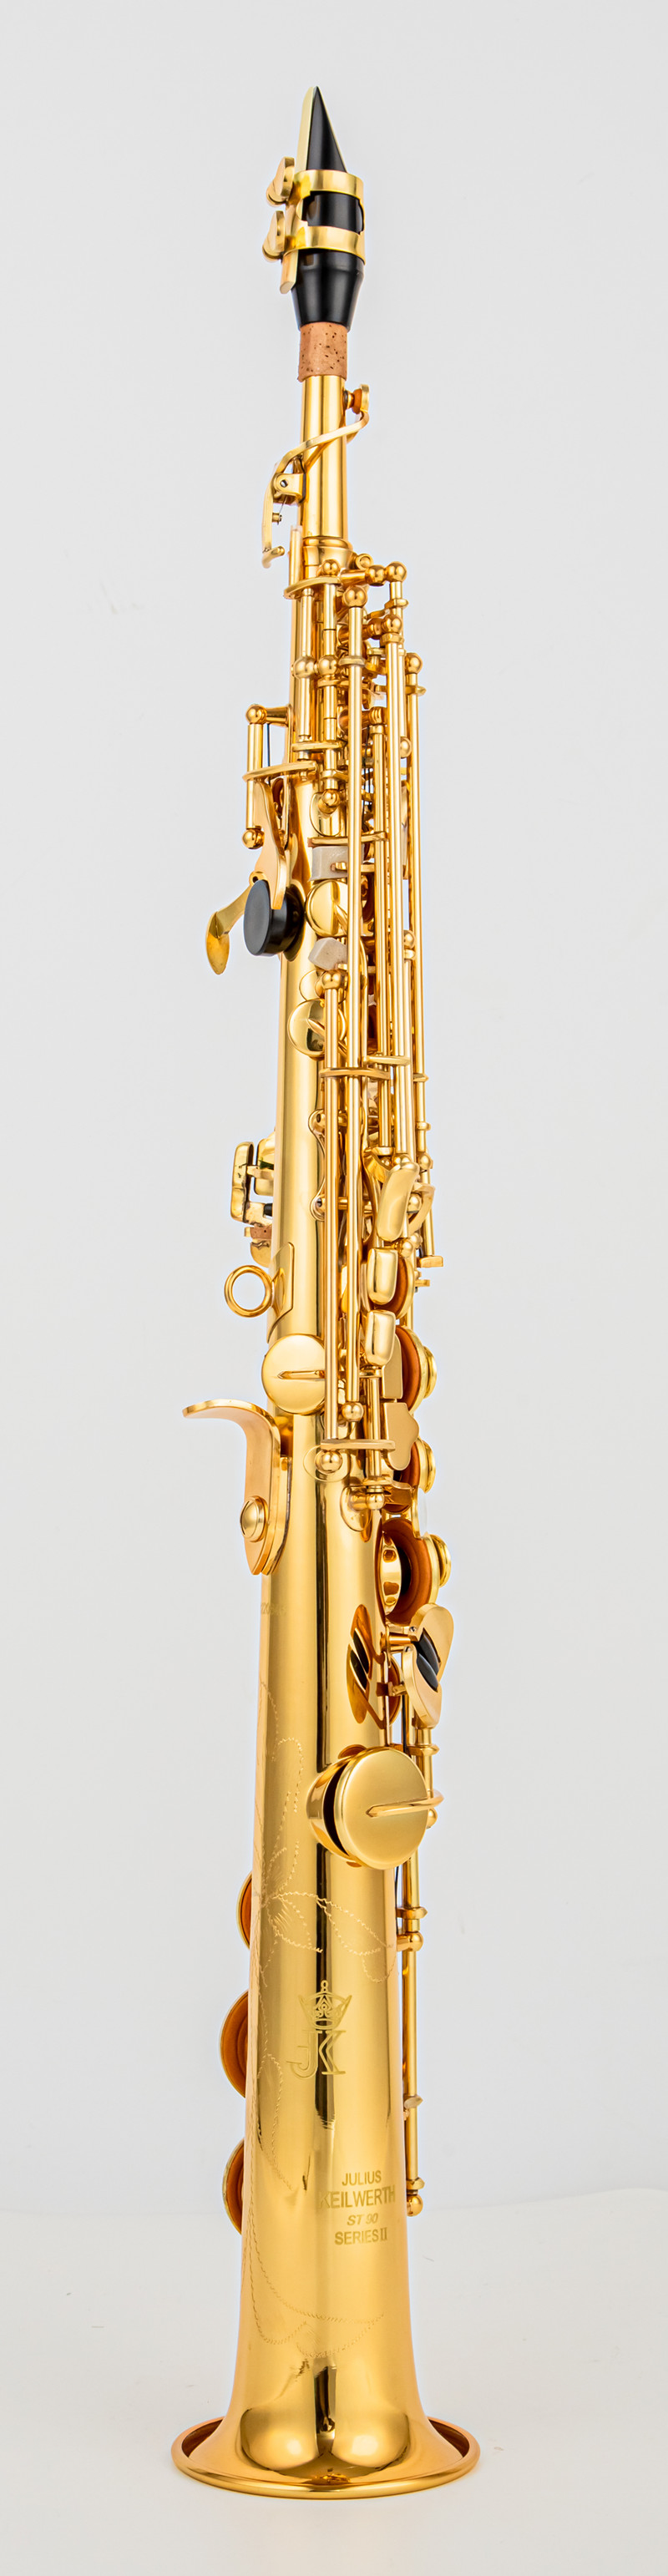 JK Keilwerth SX90II Soprano Saxofon Gold Nickel B Flat Soprano rakt med två nacke, fodral, munstycke, handskar, vass